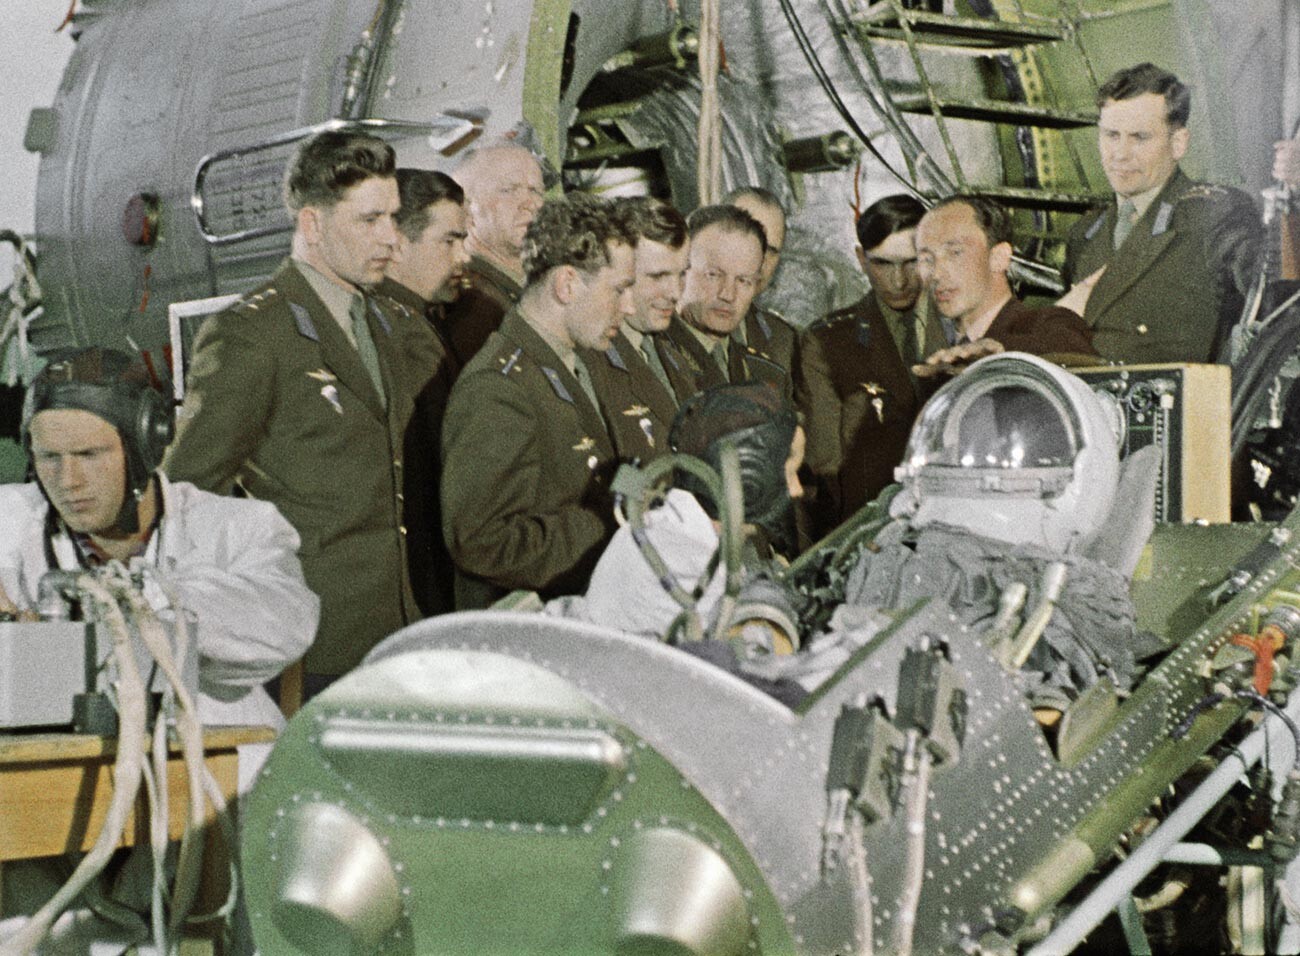 Летчики-истребители ВВС Герман Титов (в центре слева) и Юрий Гагарин (в центре 2 слева) в составе группы первого отряда космонавтов СССР